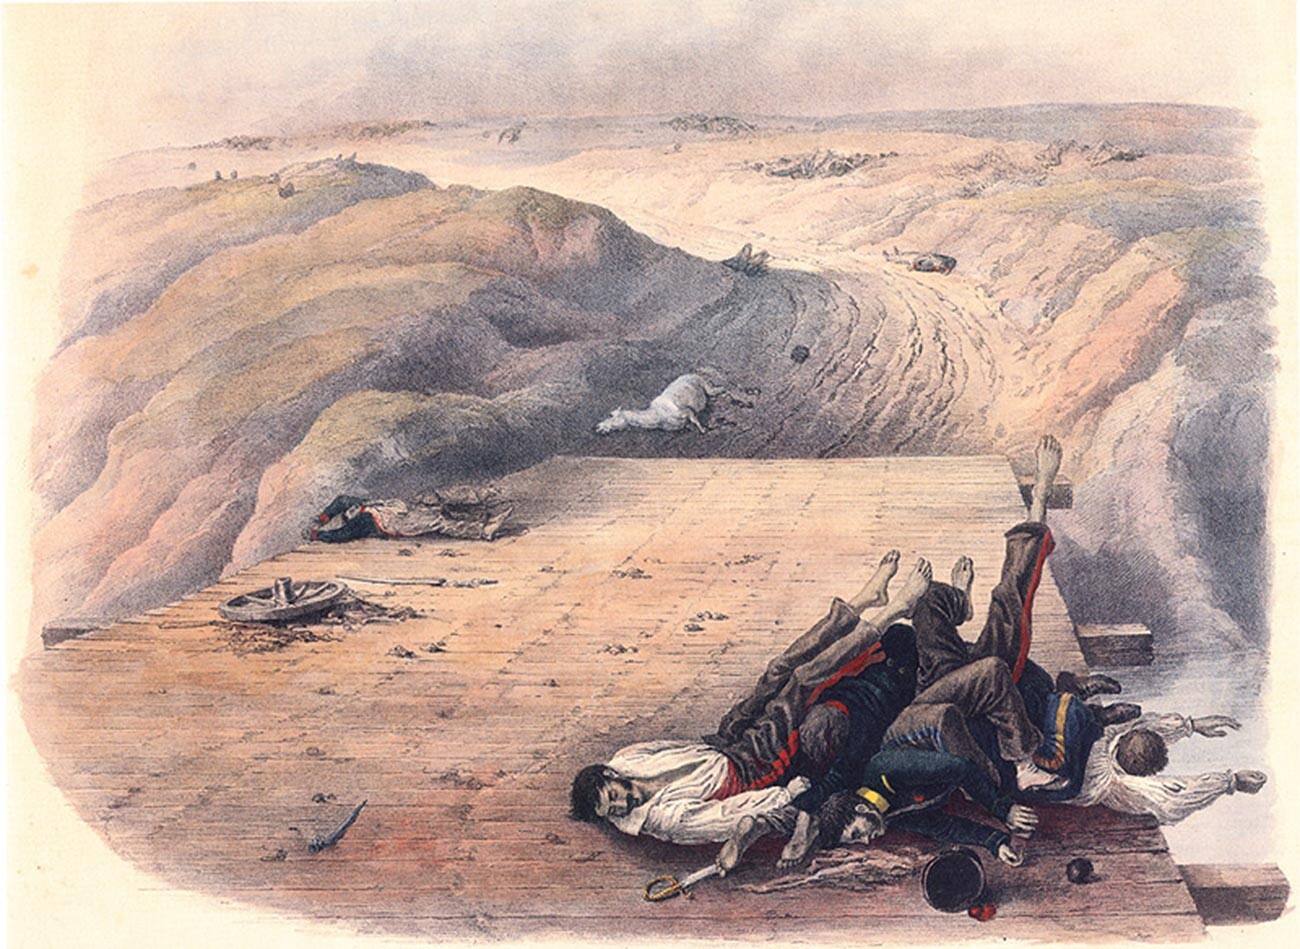 Тела погибших солдат Великой Армии Наполеона, оставленные на мосту через реку Колочь после Бородинского сражения 1812 года.